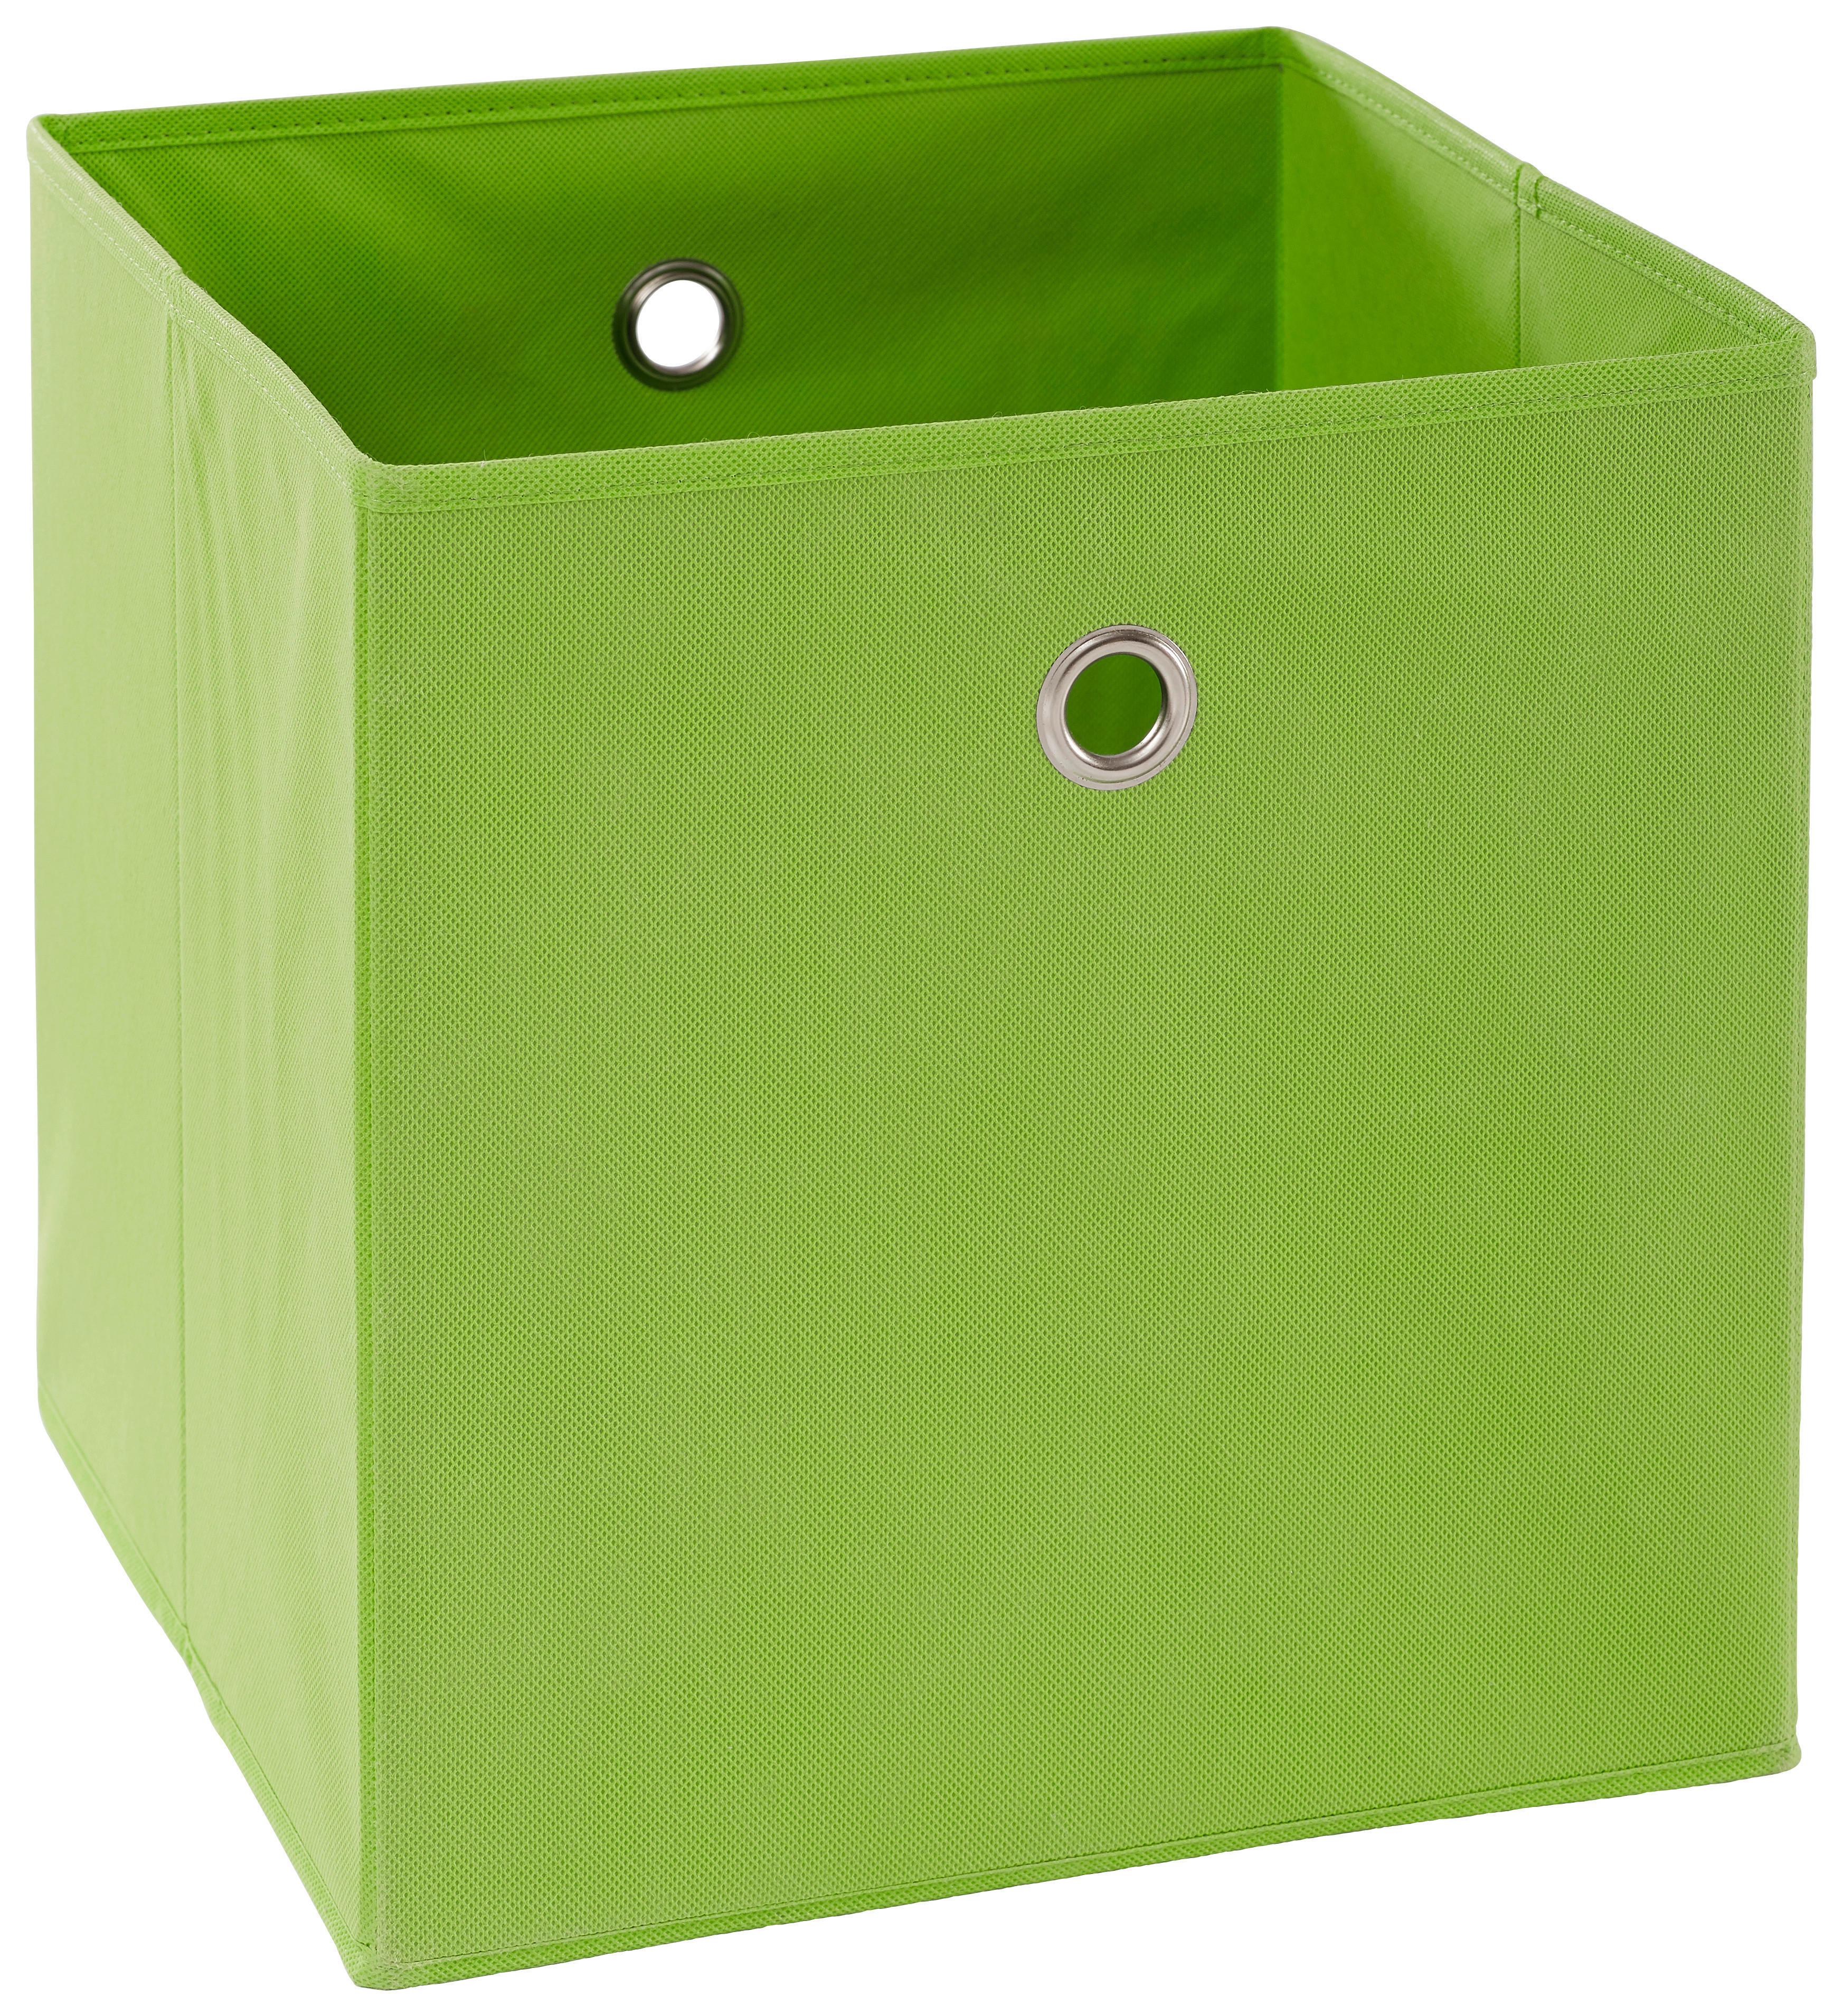 Faltbox 600x400x320 mm in grün online bestellen